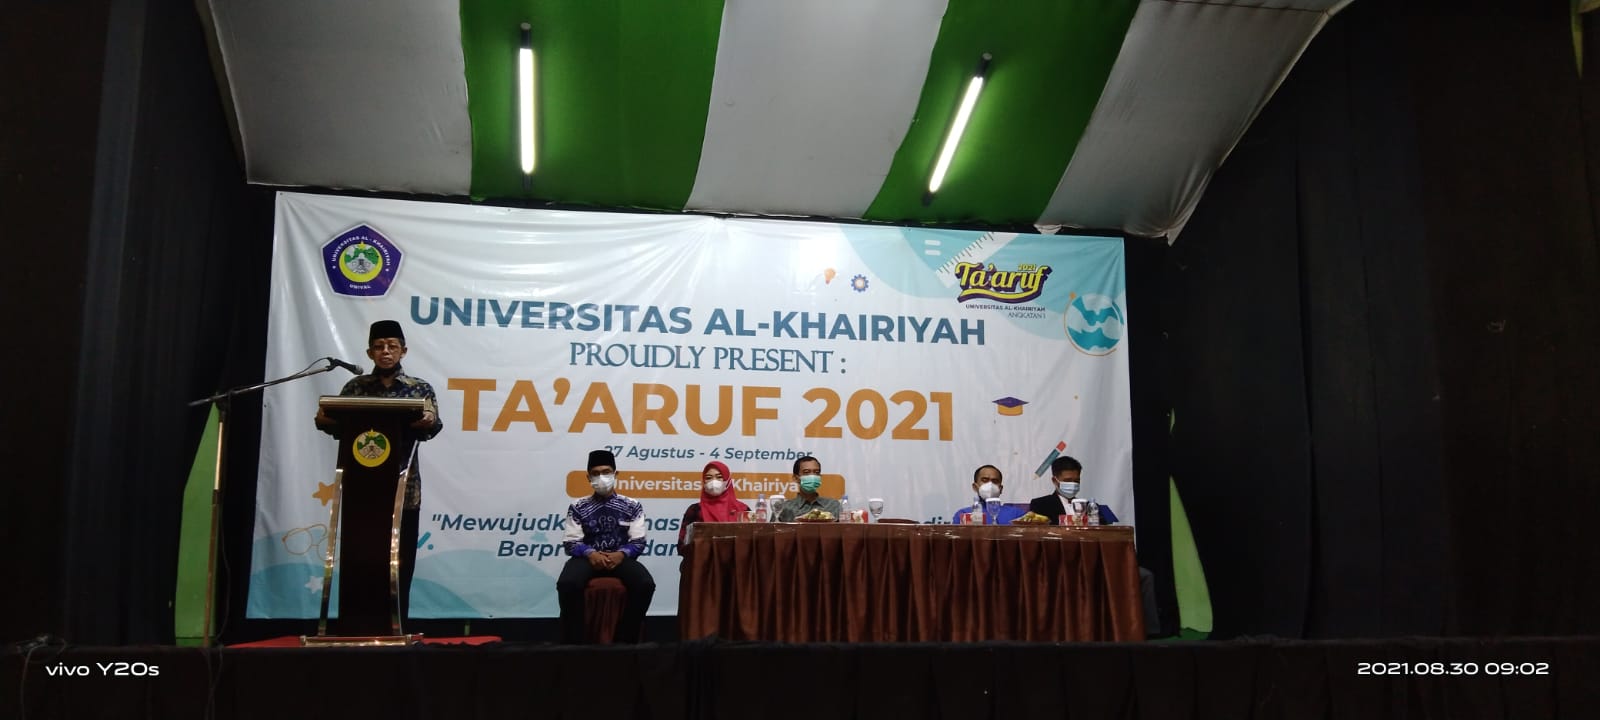 Program Pengenalan Kampus Univeritas Al-Khairiyah “Ta’aruf” 2021